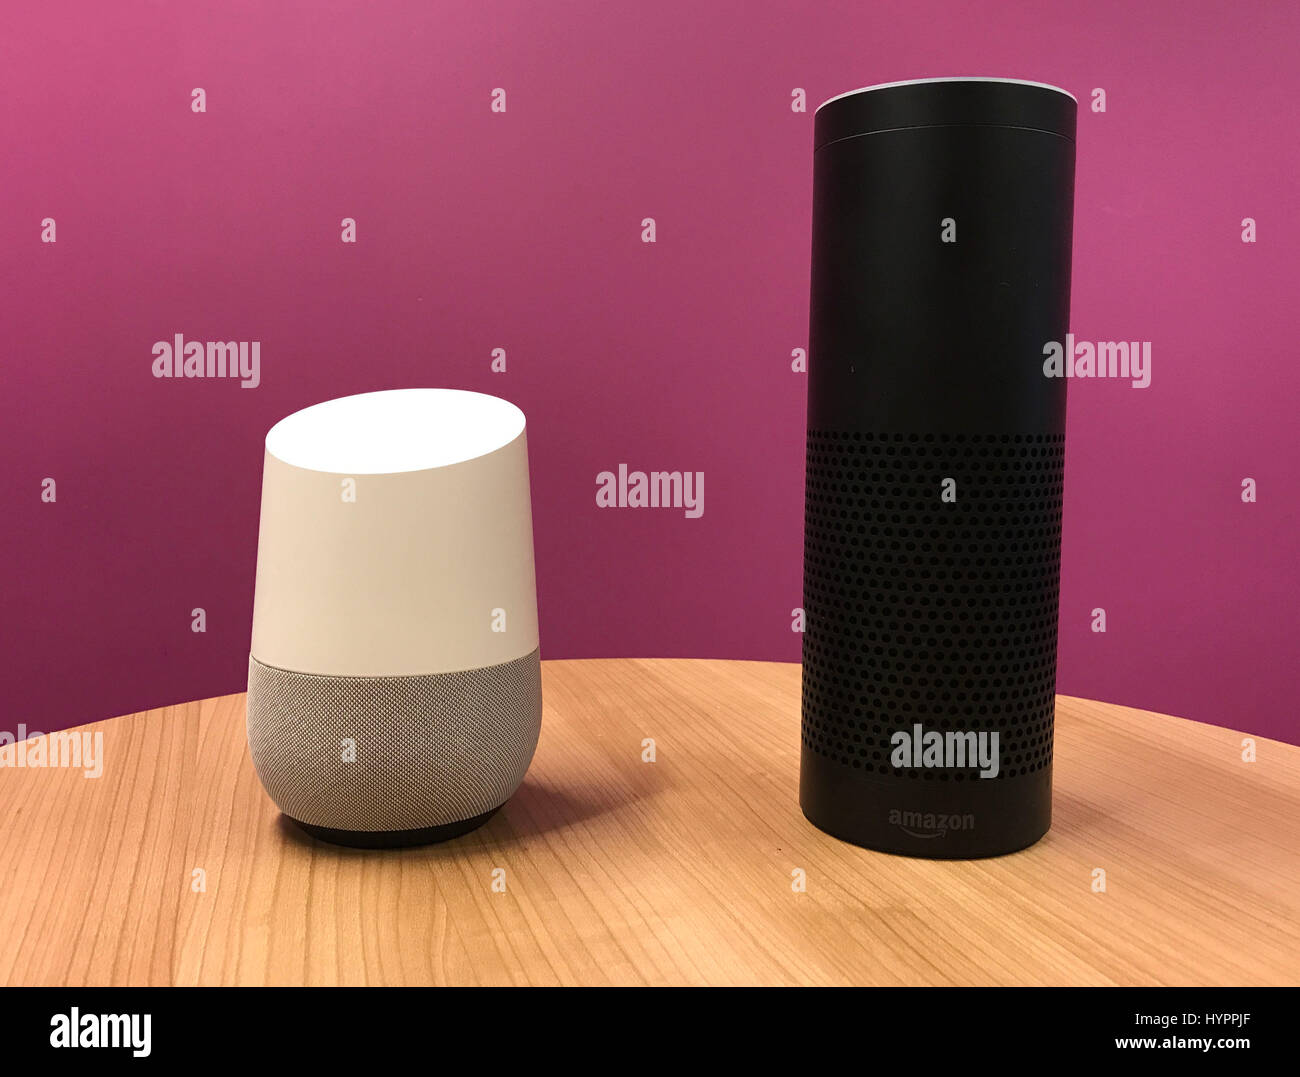 Google-Startseite (links) die im Vereinigten Königreich mit Amazons Echo (rechts), konkurrieren in London gestartet wurde. Stockfoto